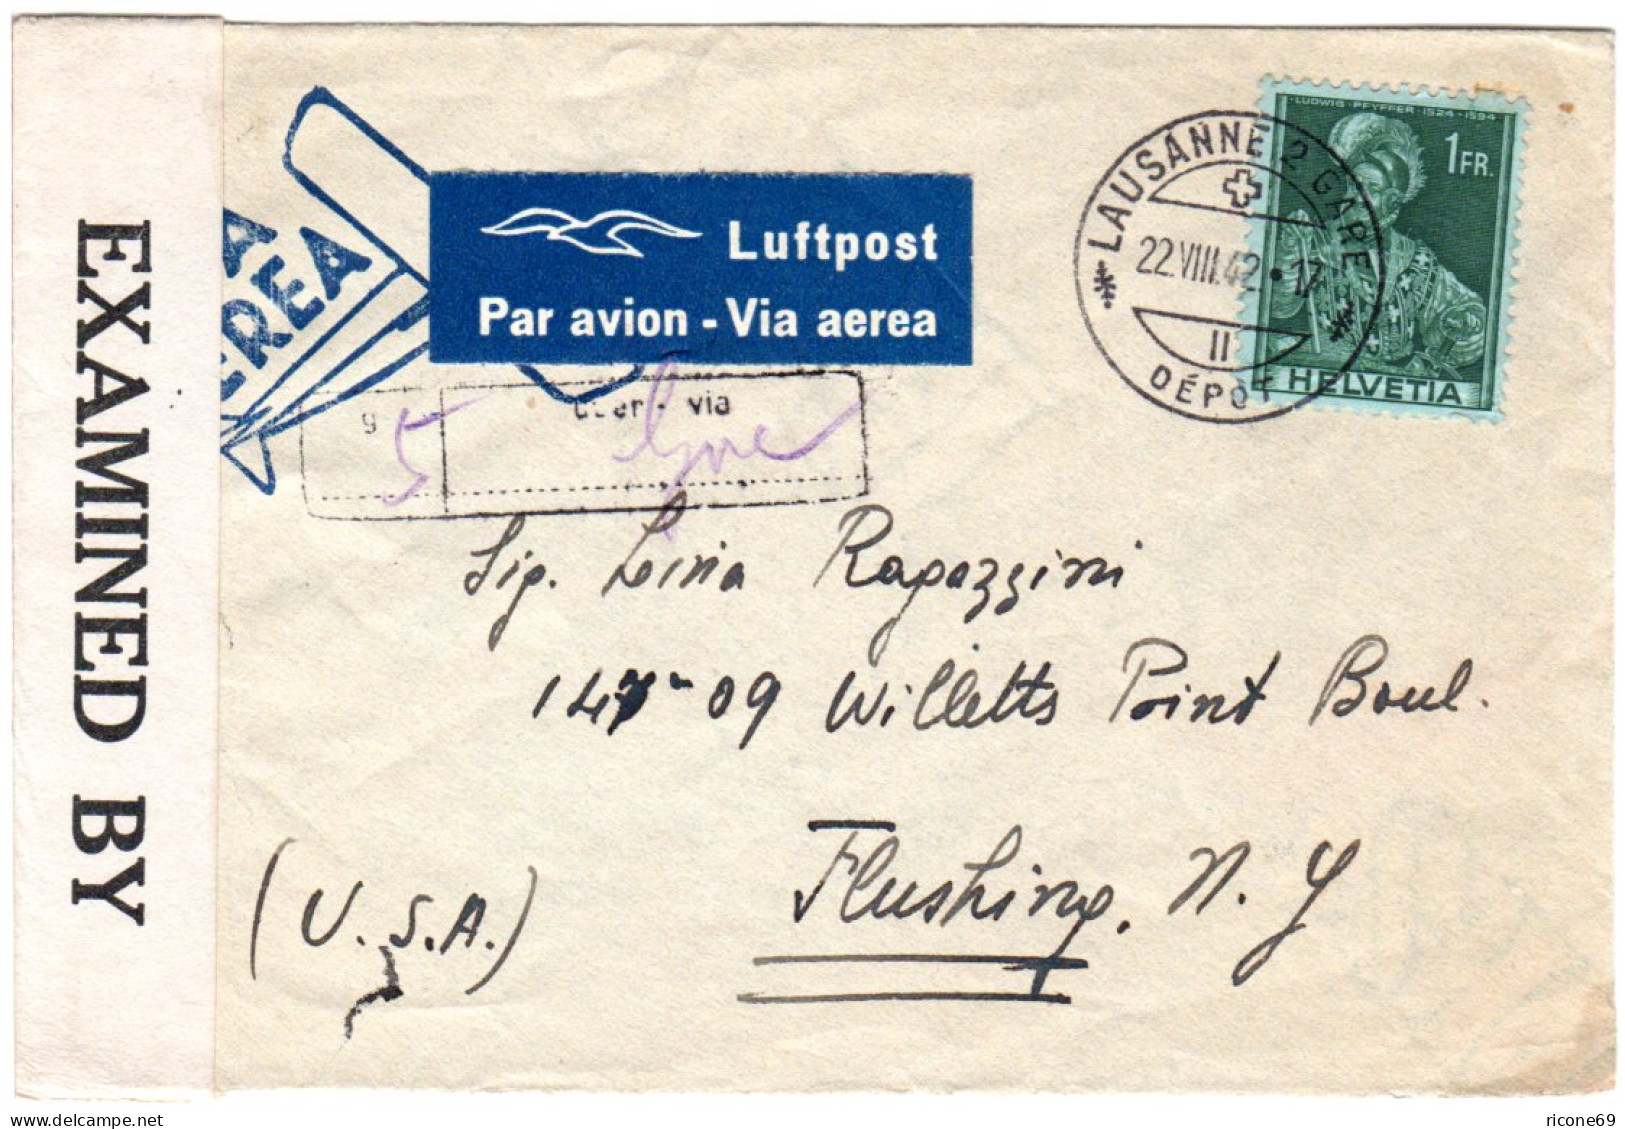 Schweiz 1942, EF 1 Fr. Auf Luftpost Zensur Brief V. Lausanne Via Genf N. USA - Covers & Documents